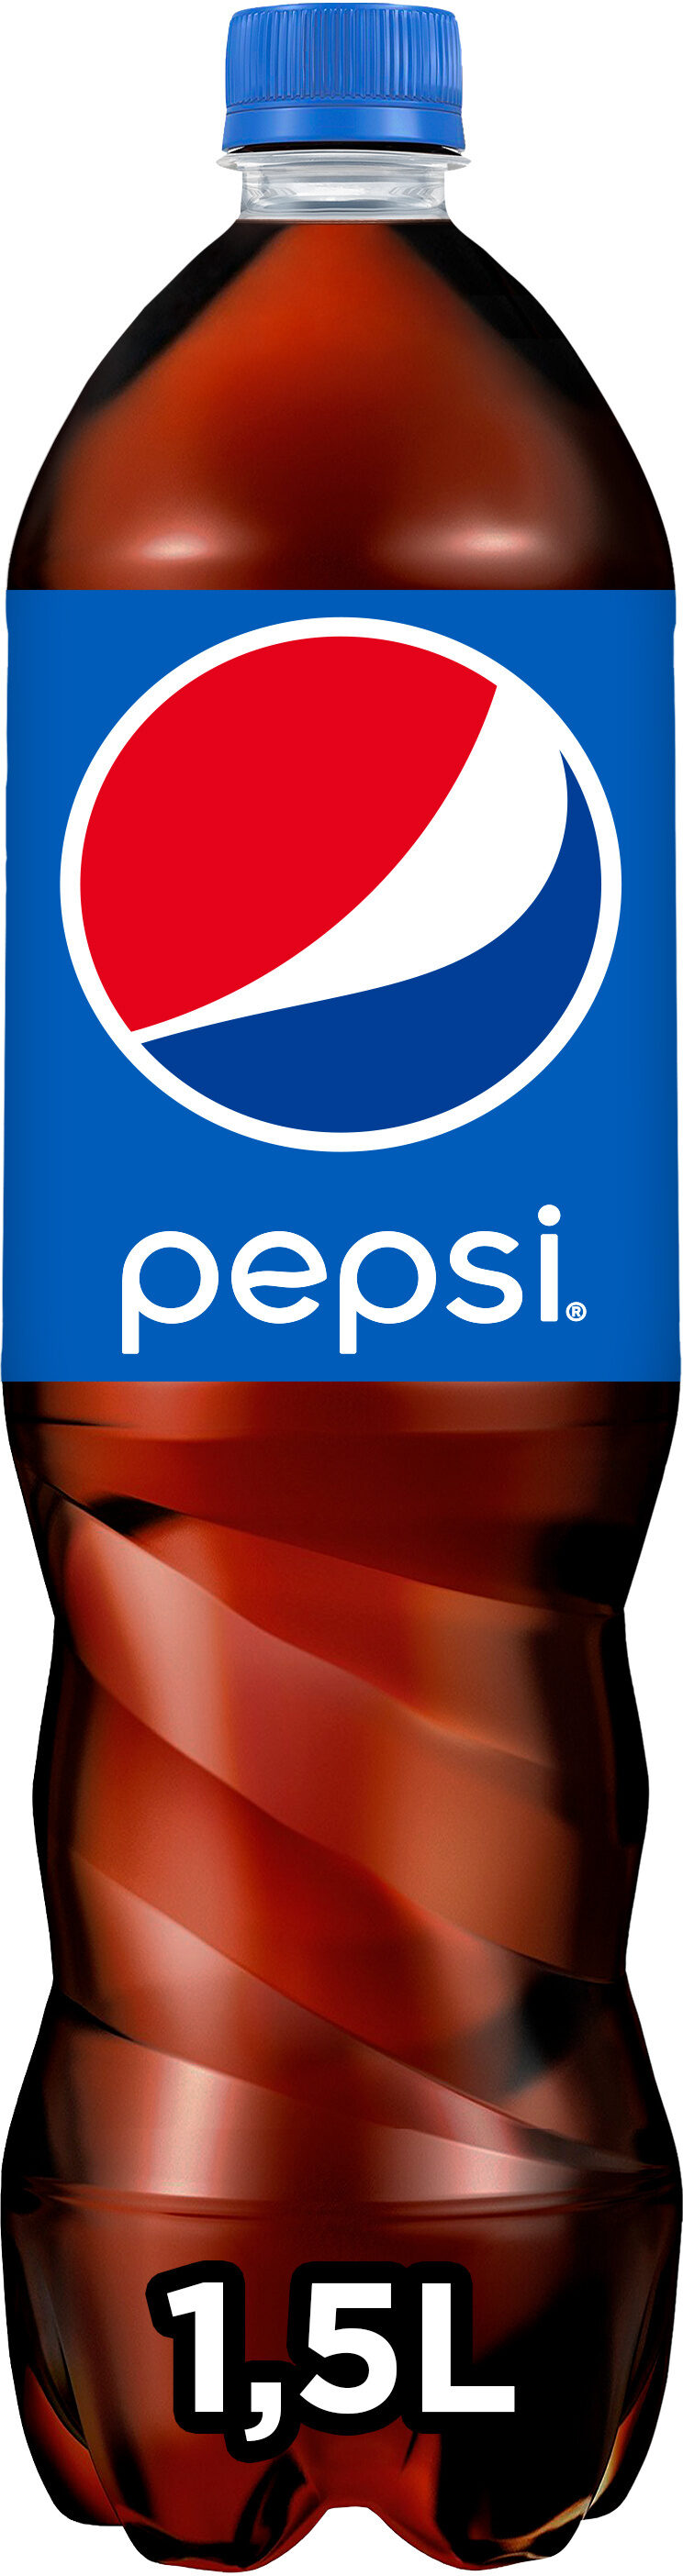 Pepsi 1,5L - Produkt - fr